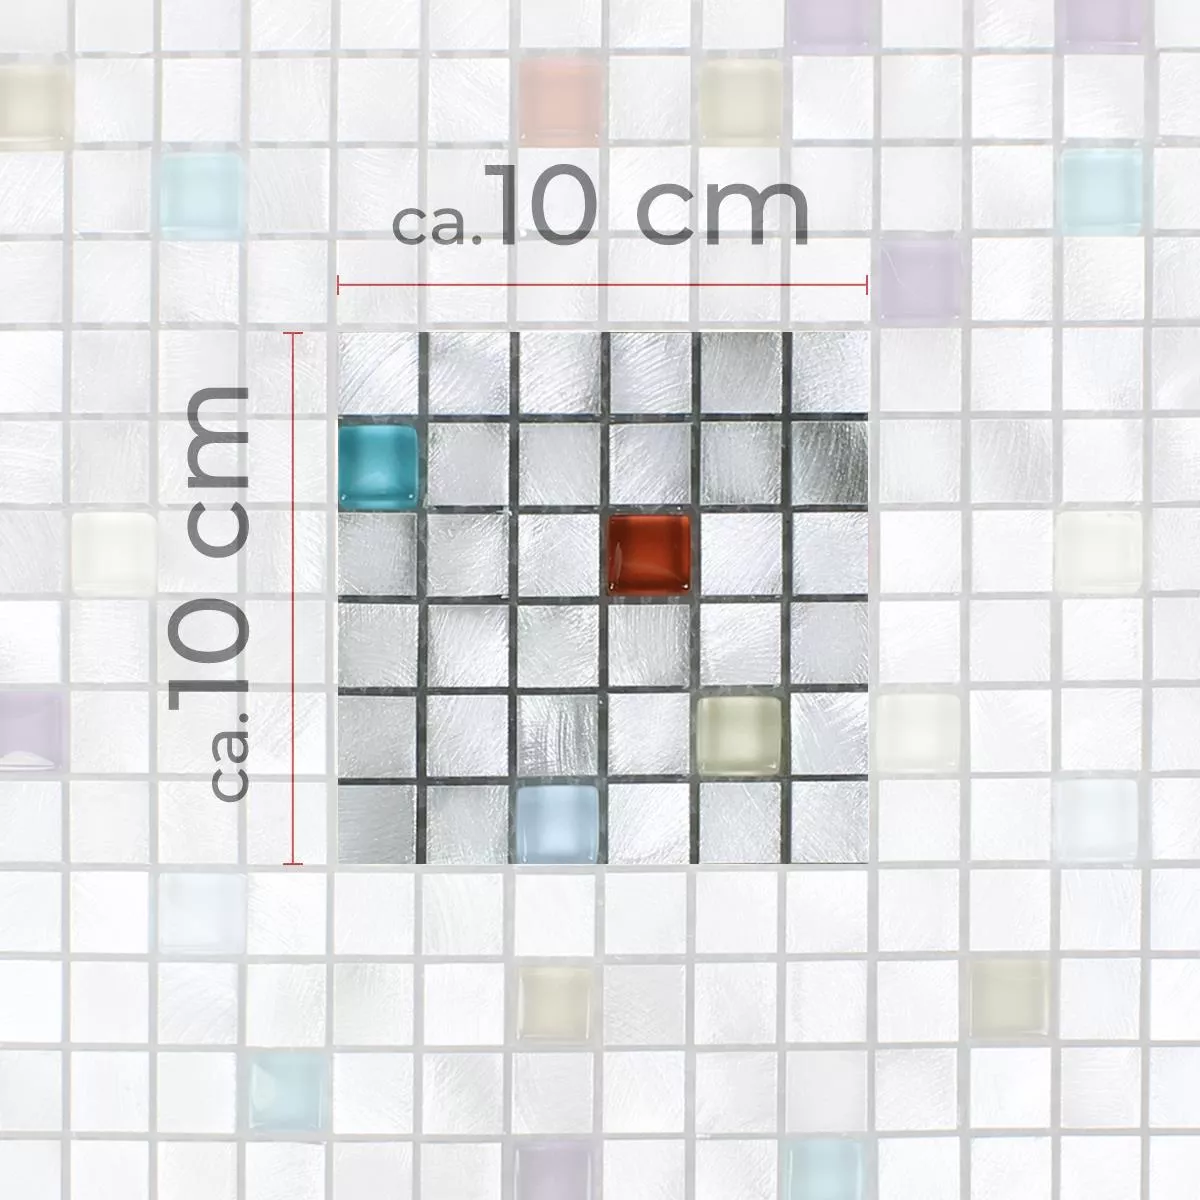 Muster von Mosaikfliesen Lissabon Aluminium Glas Mix Bunt